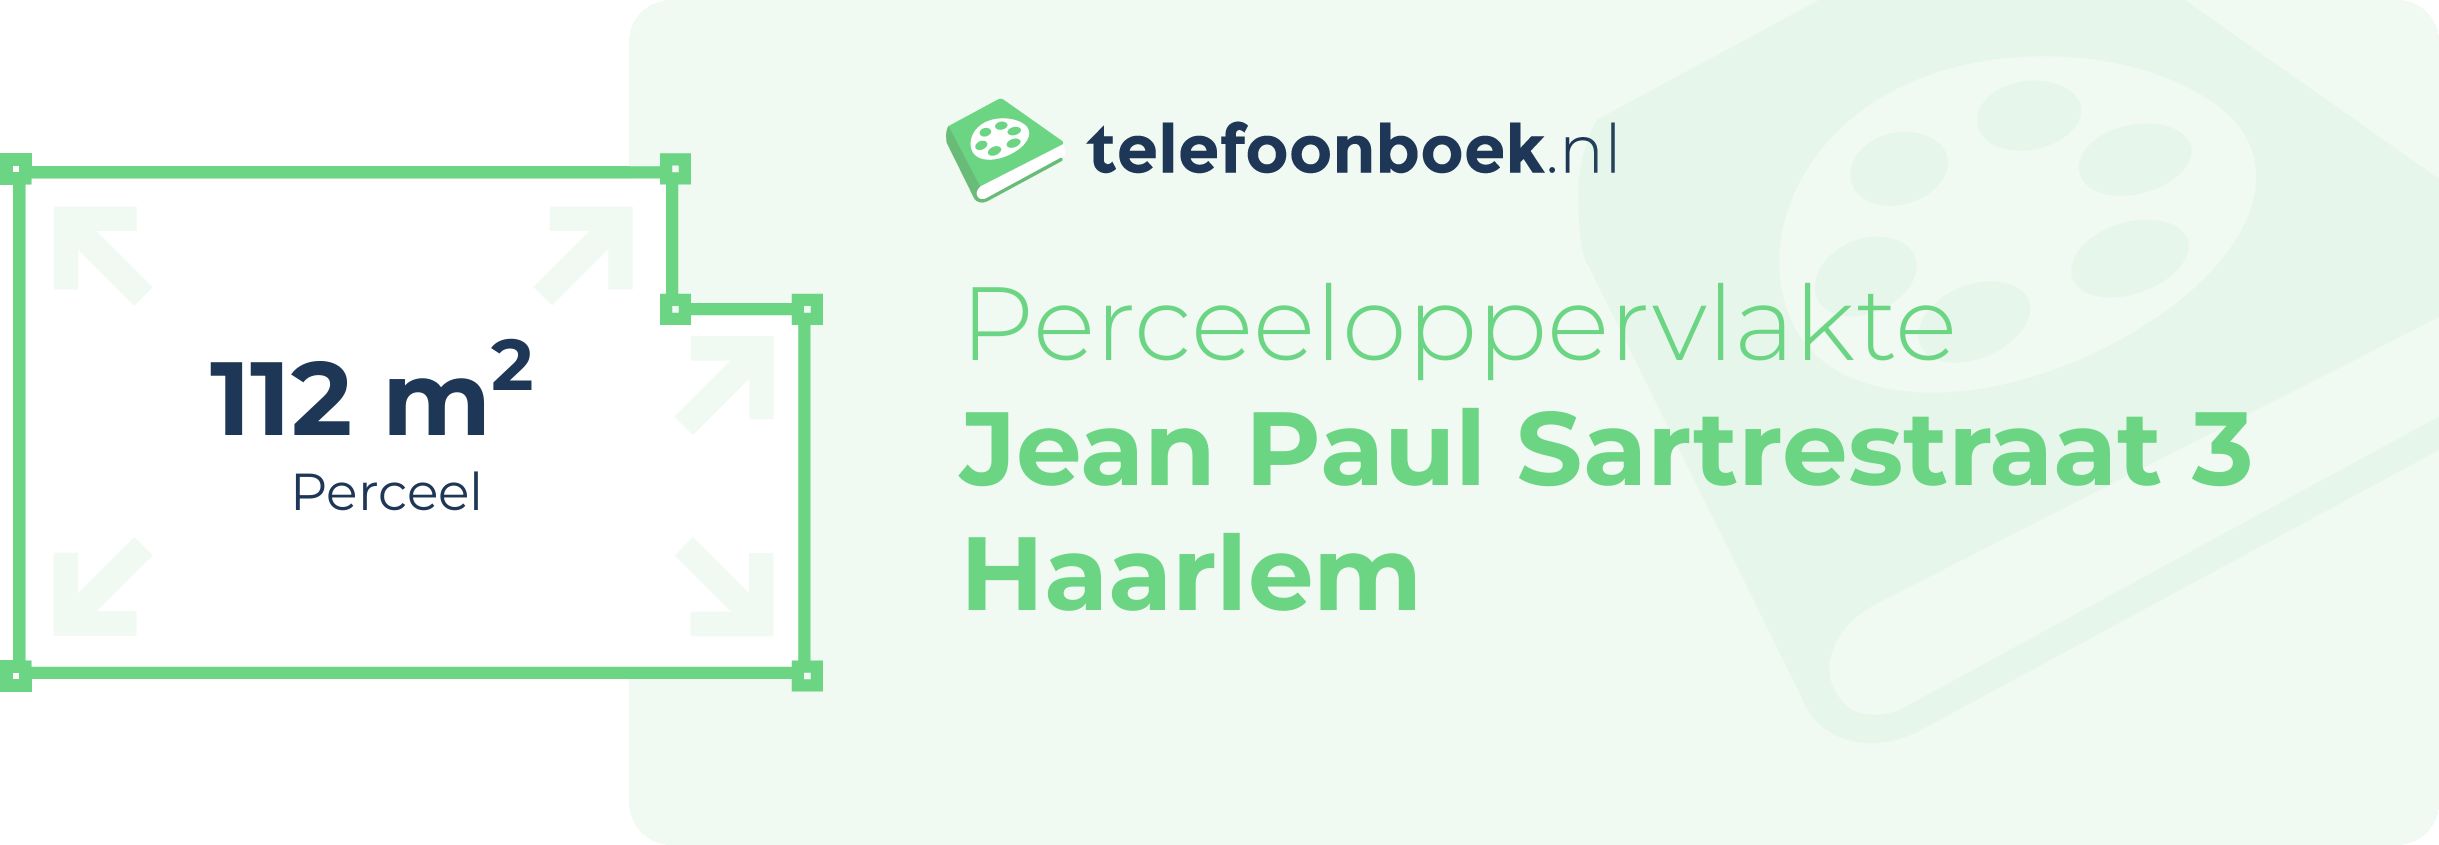 Perceeloppervlakte Jean Paul Sartrestraat 3 Haarlem